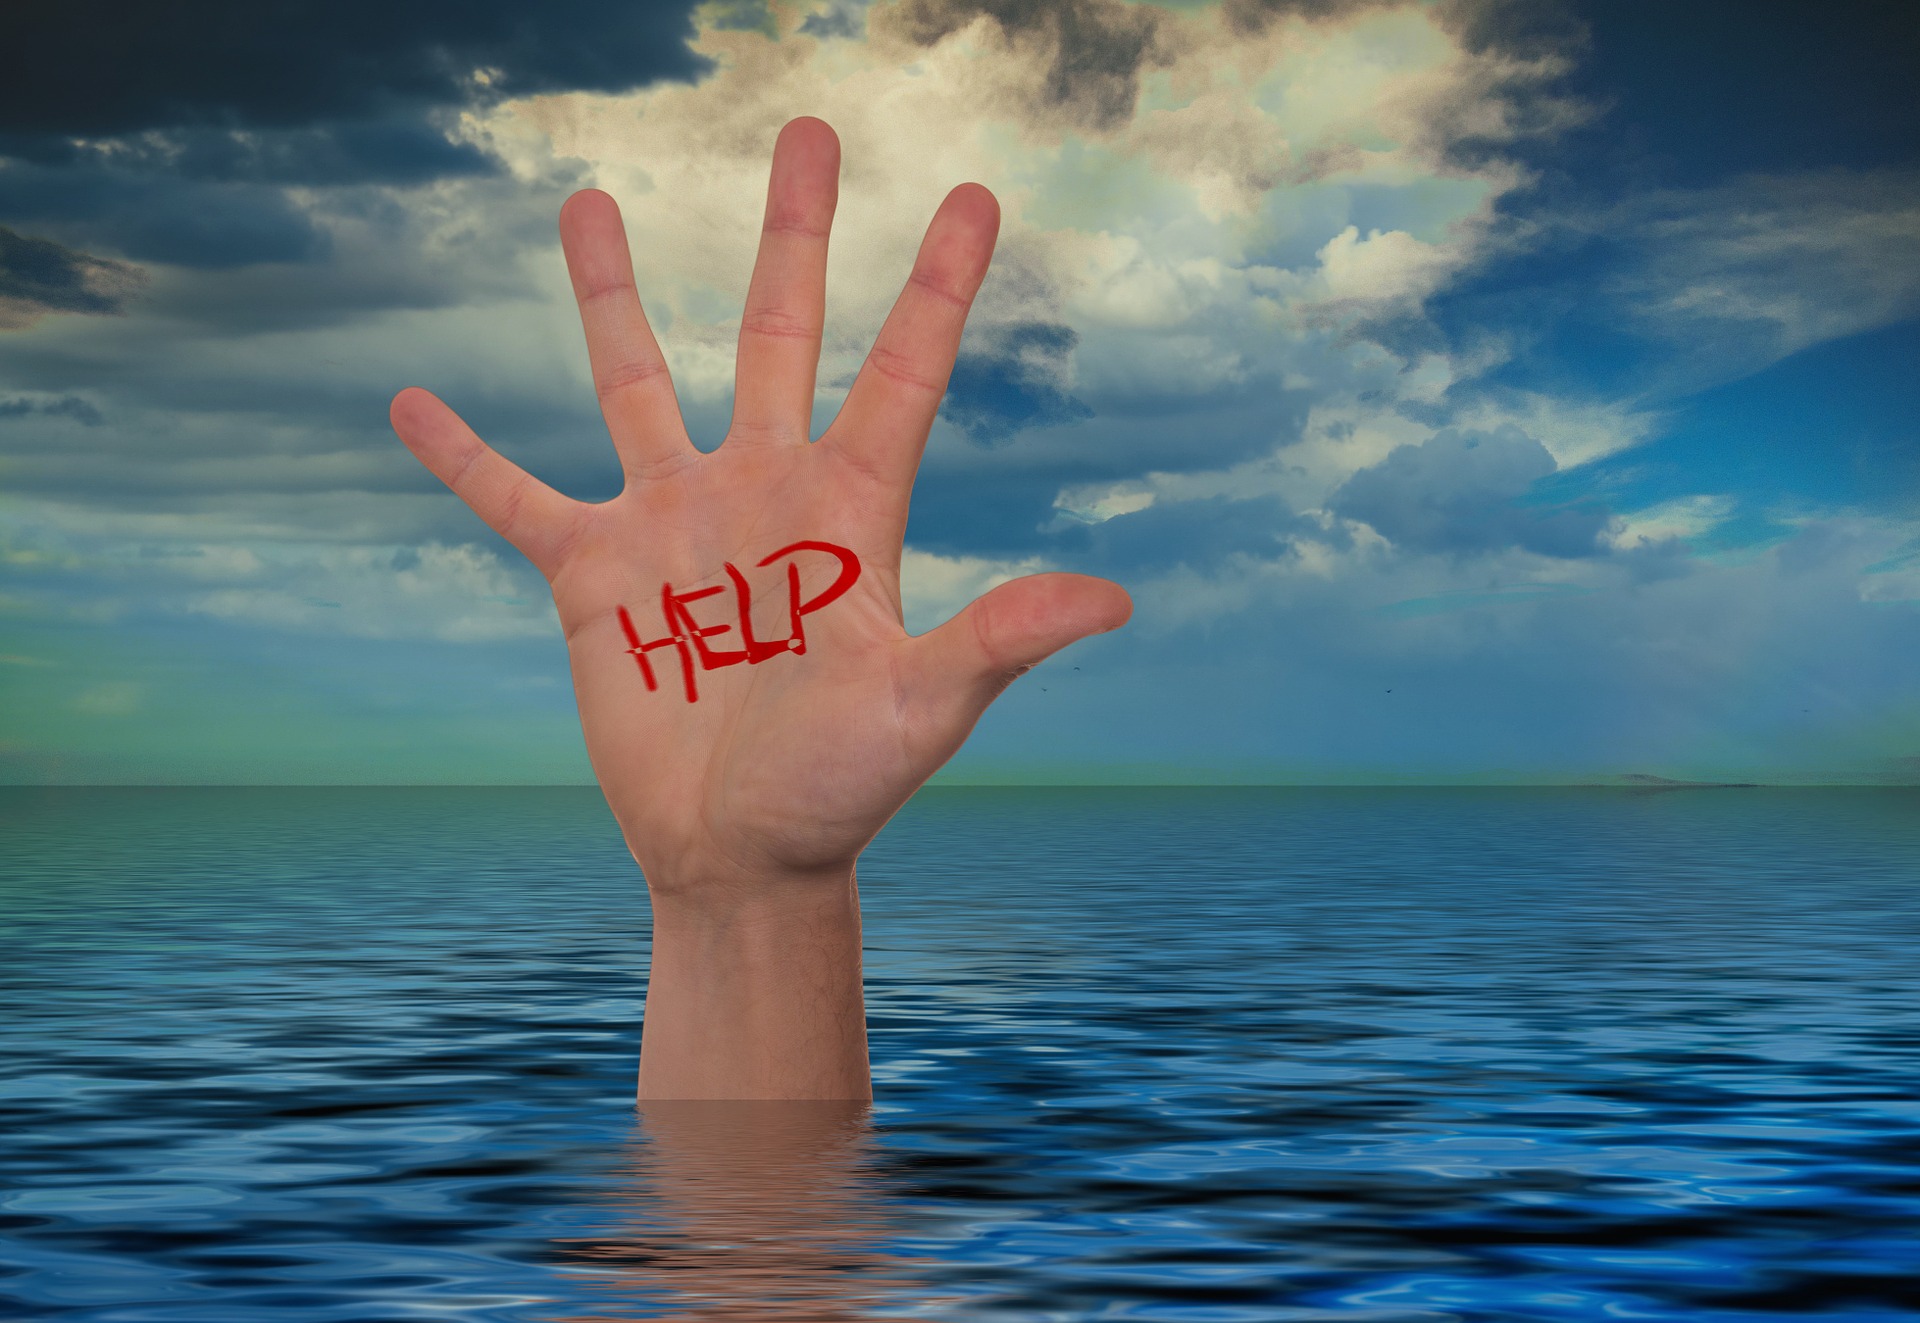 Meer, Hand, auf der Hand das Wort "Help" mit rotem Marker geschrieben